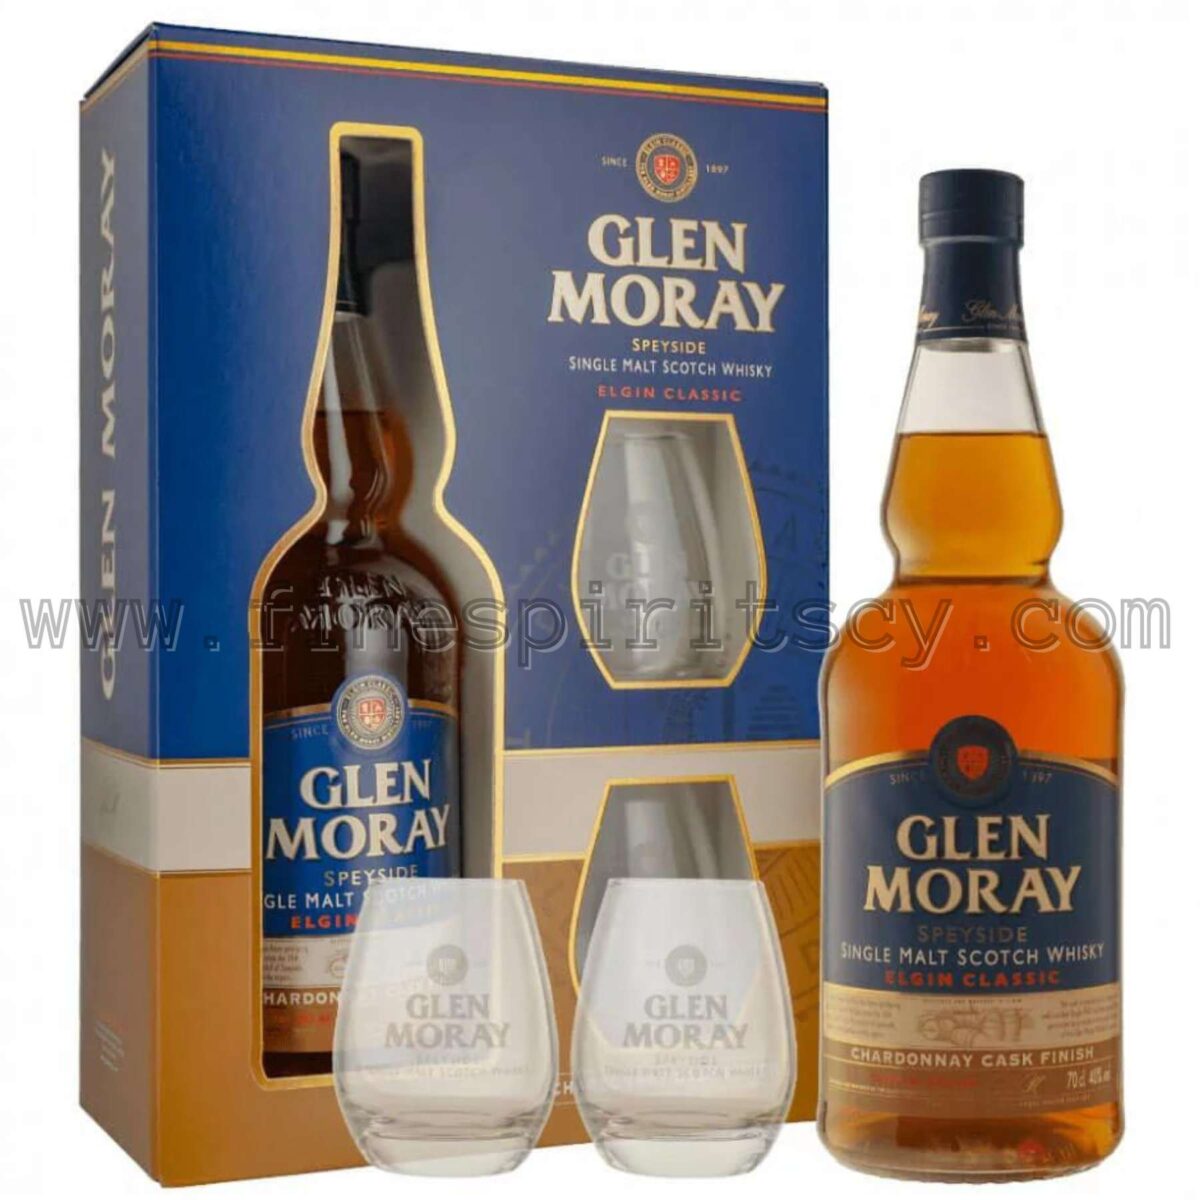 Glen Moray Chardonnay Cask Finish Gift Box Set 2 Two Glasses Cyprus Price FSCY